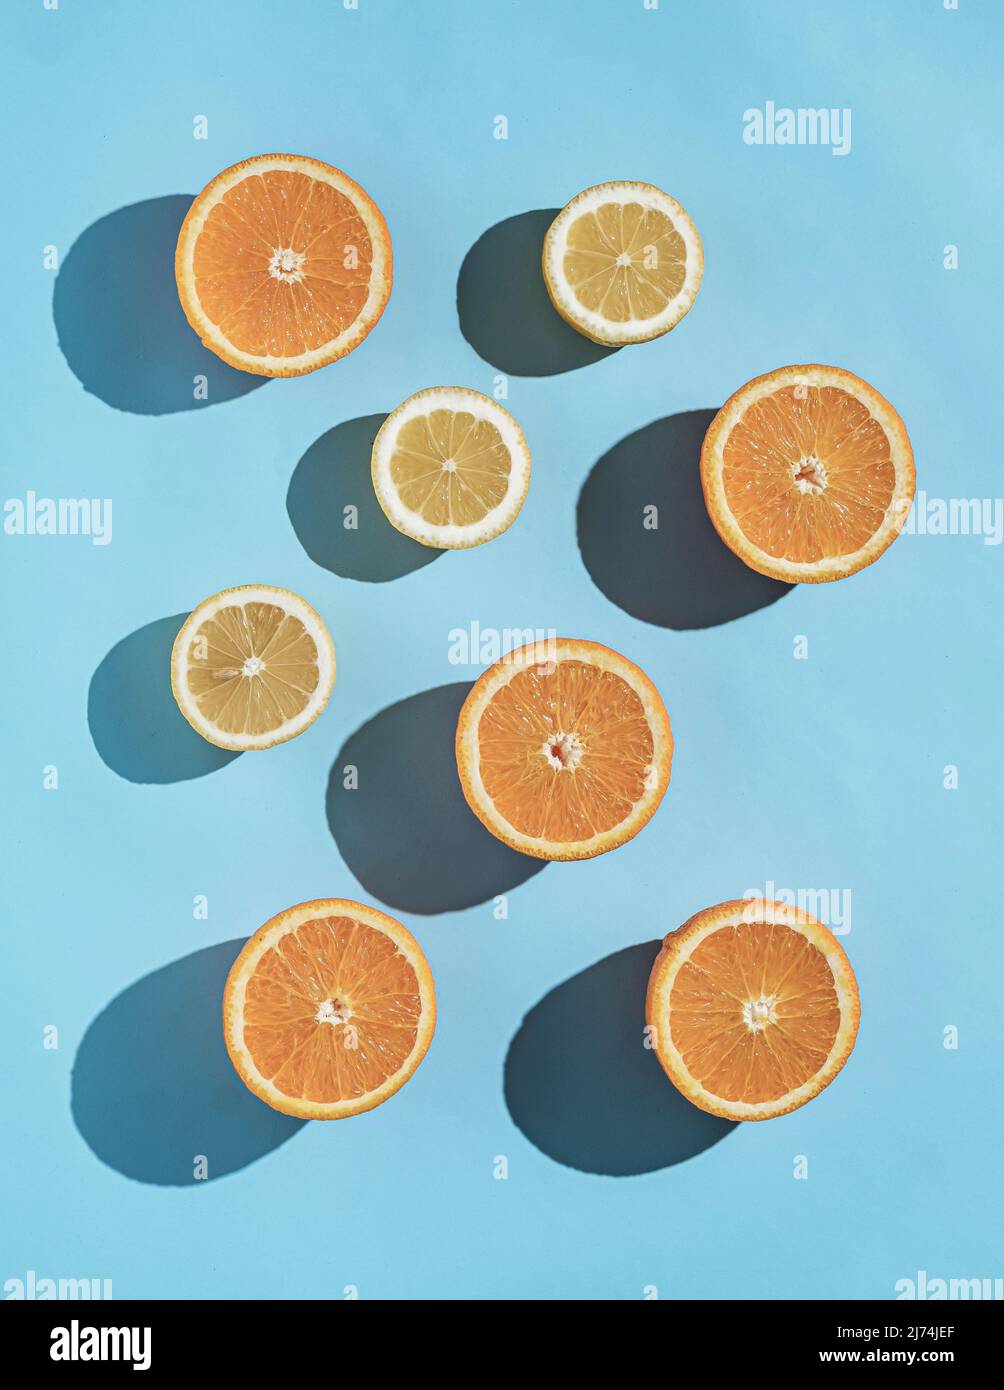 Motif fruits d'été orange et citron frais et couleur ensoleillée. Concept de tendance minimale. Banque D'Images